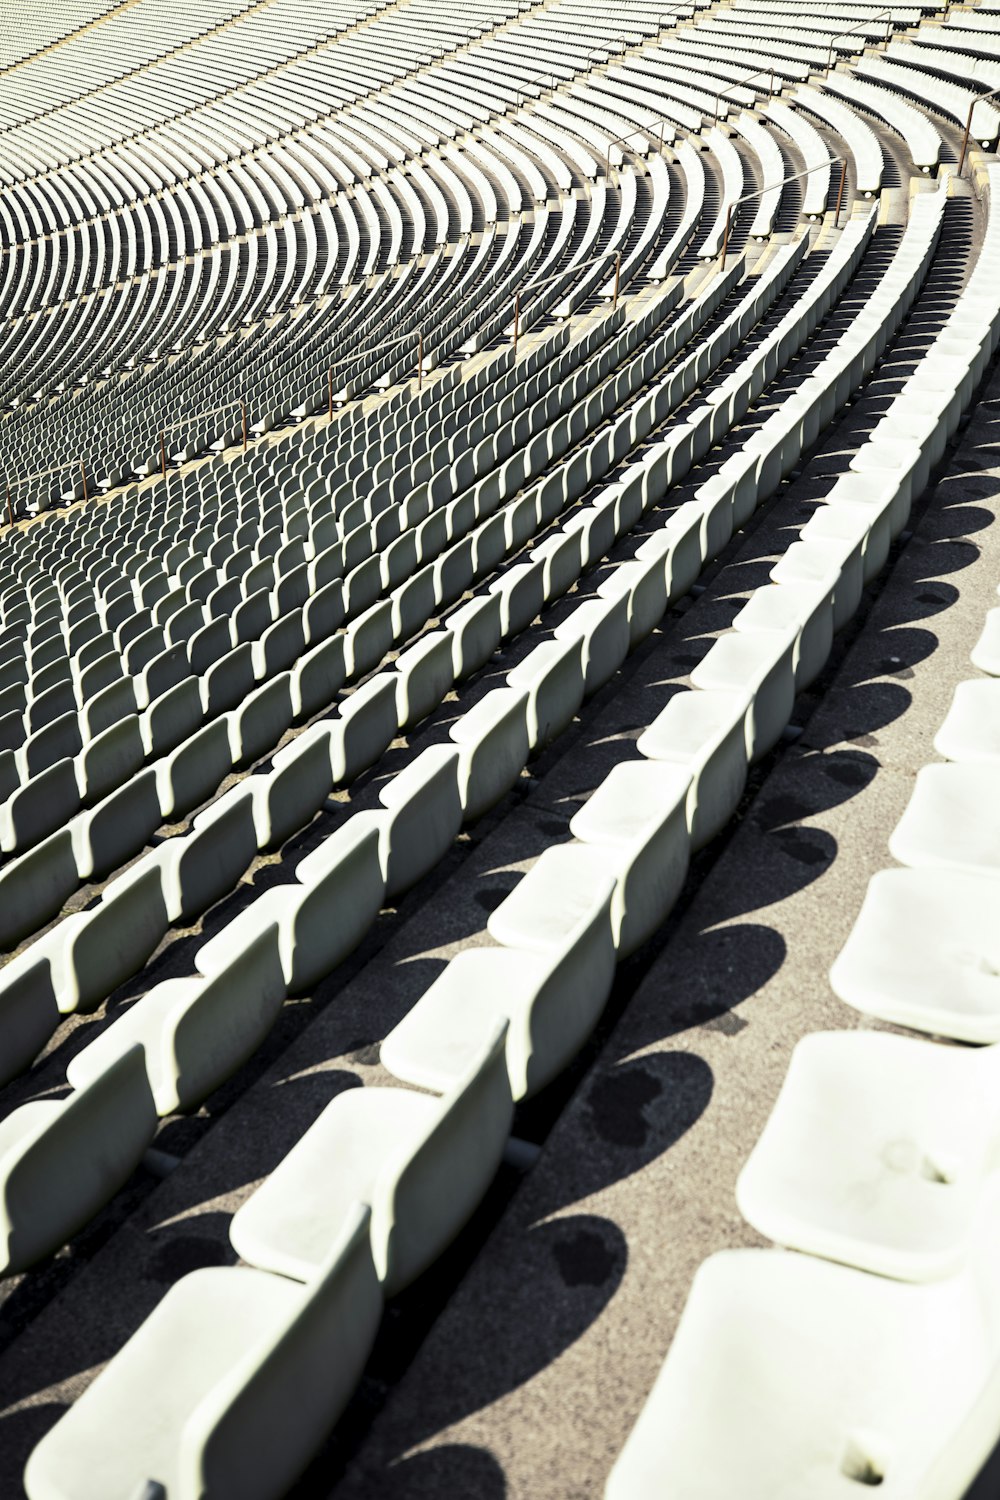 rangées de sièges blancs dans un stade ou un aréna